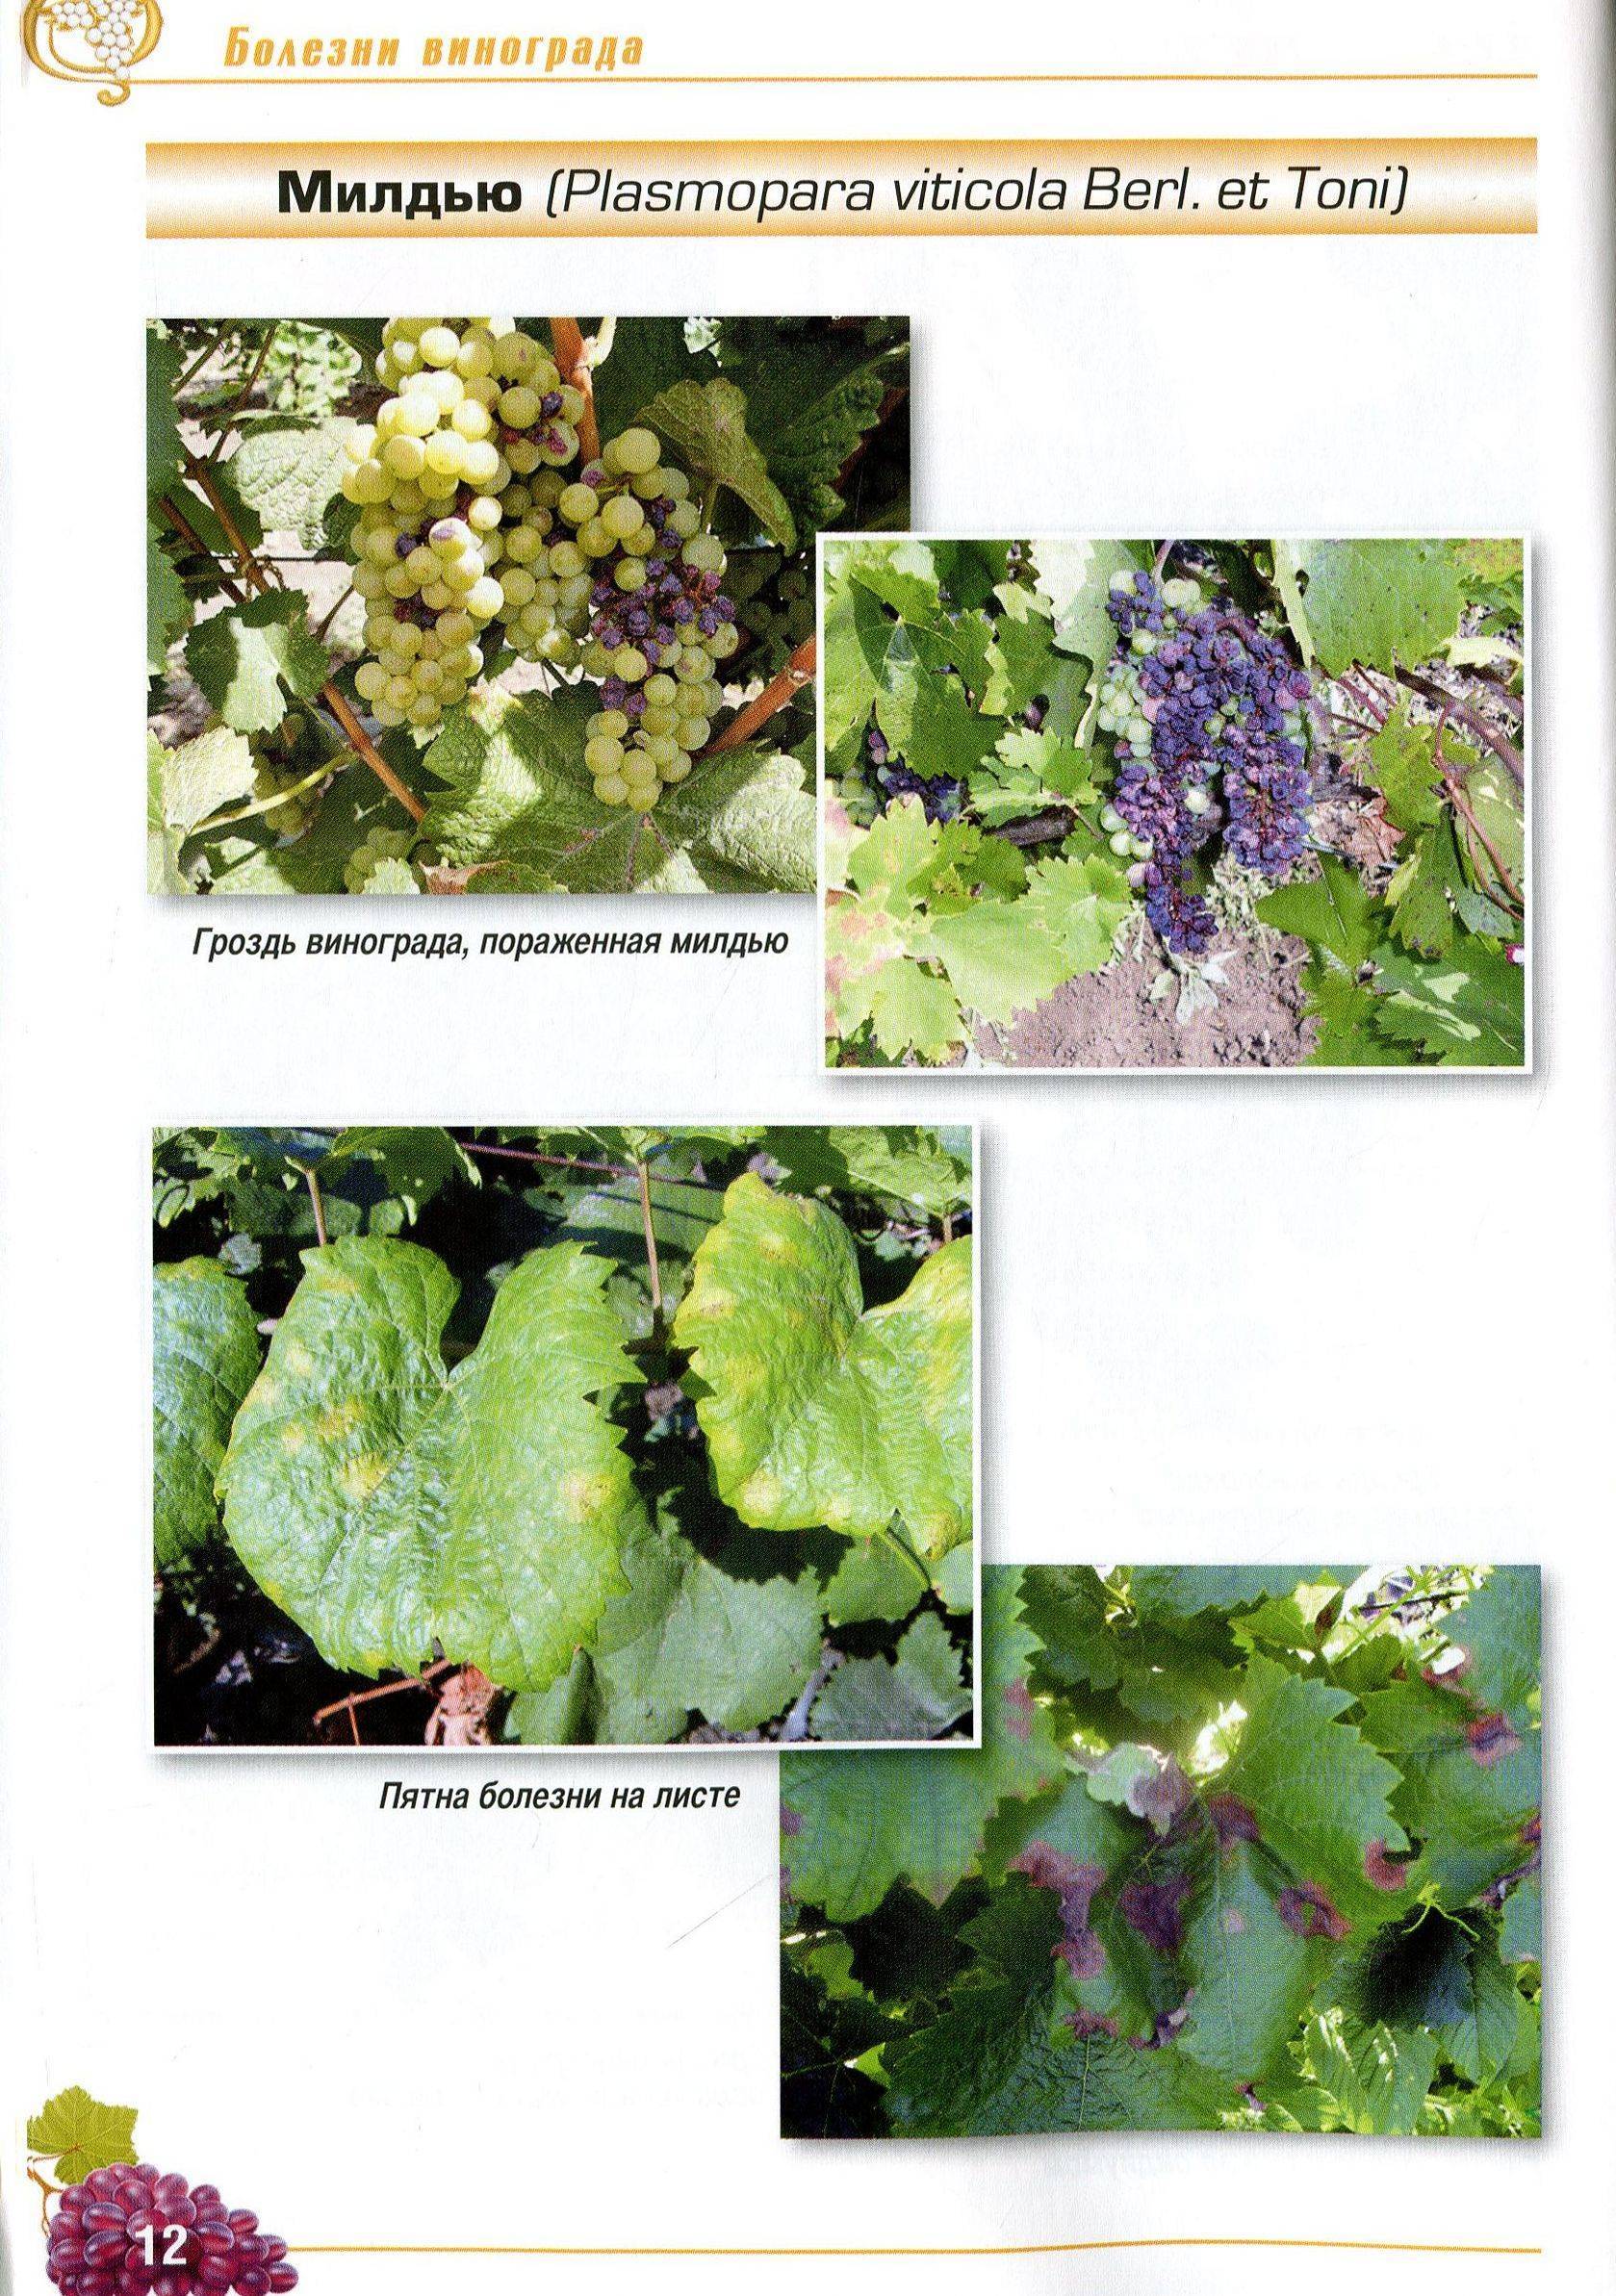 Болезни винограда: описание с фотографиями и способы лечения, чем лечить на листьях и ягодах, вредители и борьба с ними, серый налет, хлороз и другие